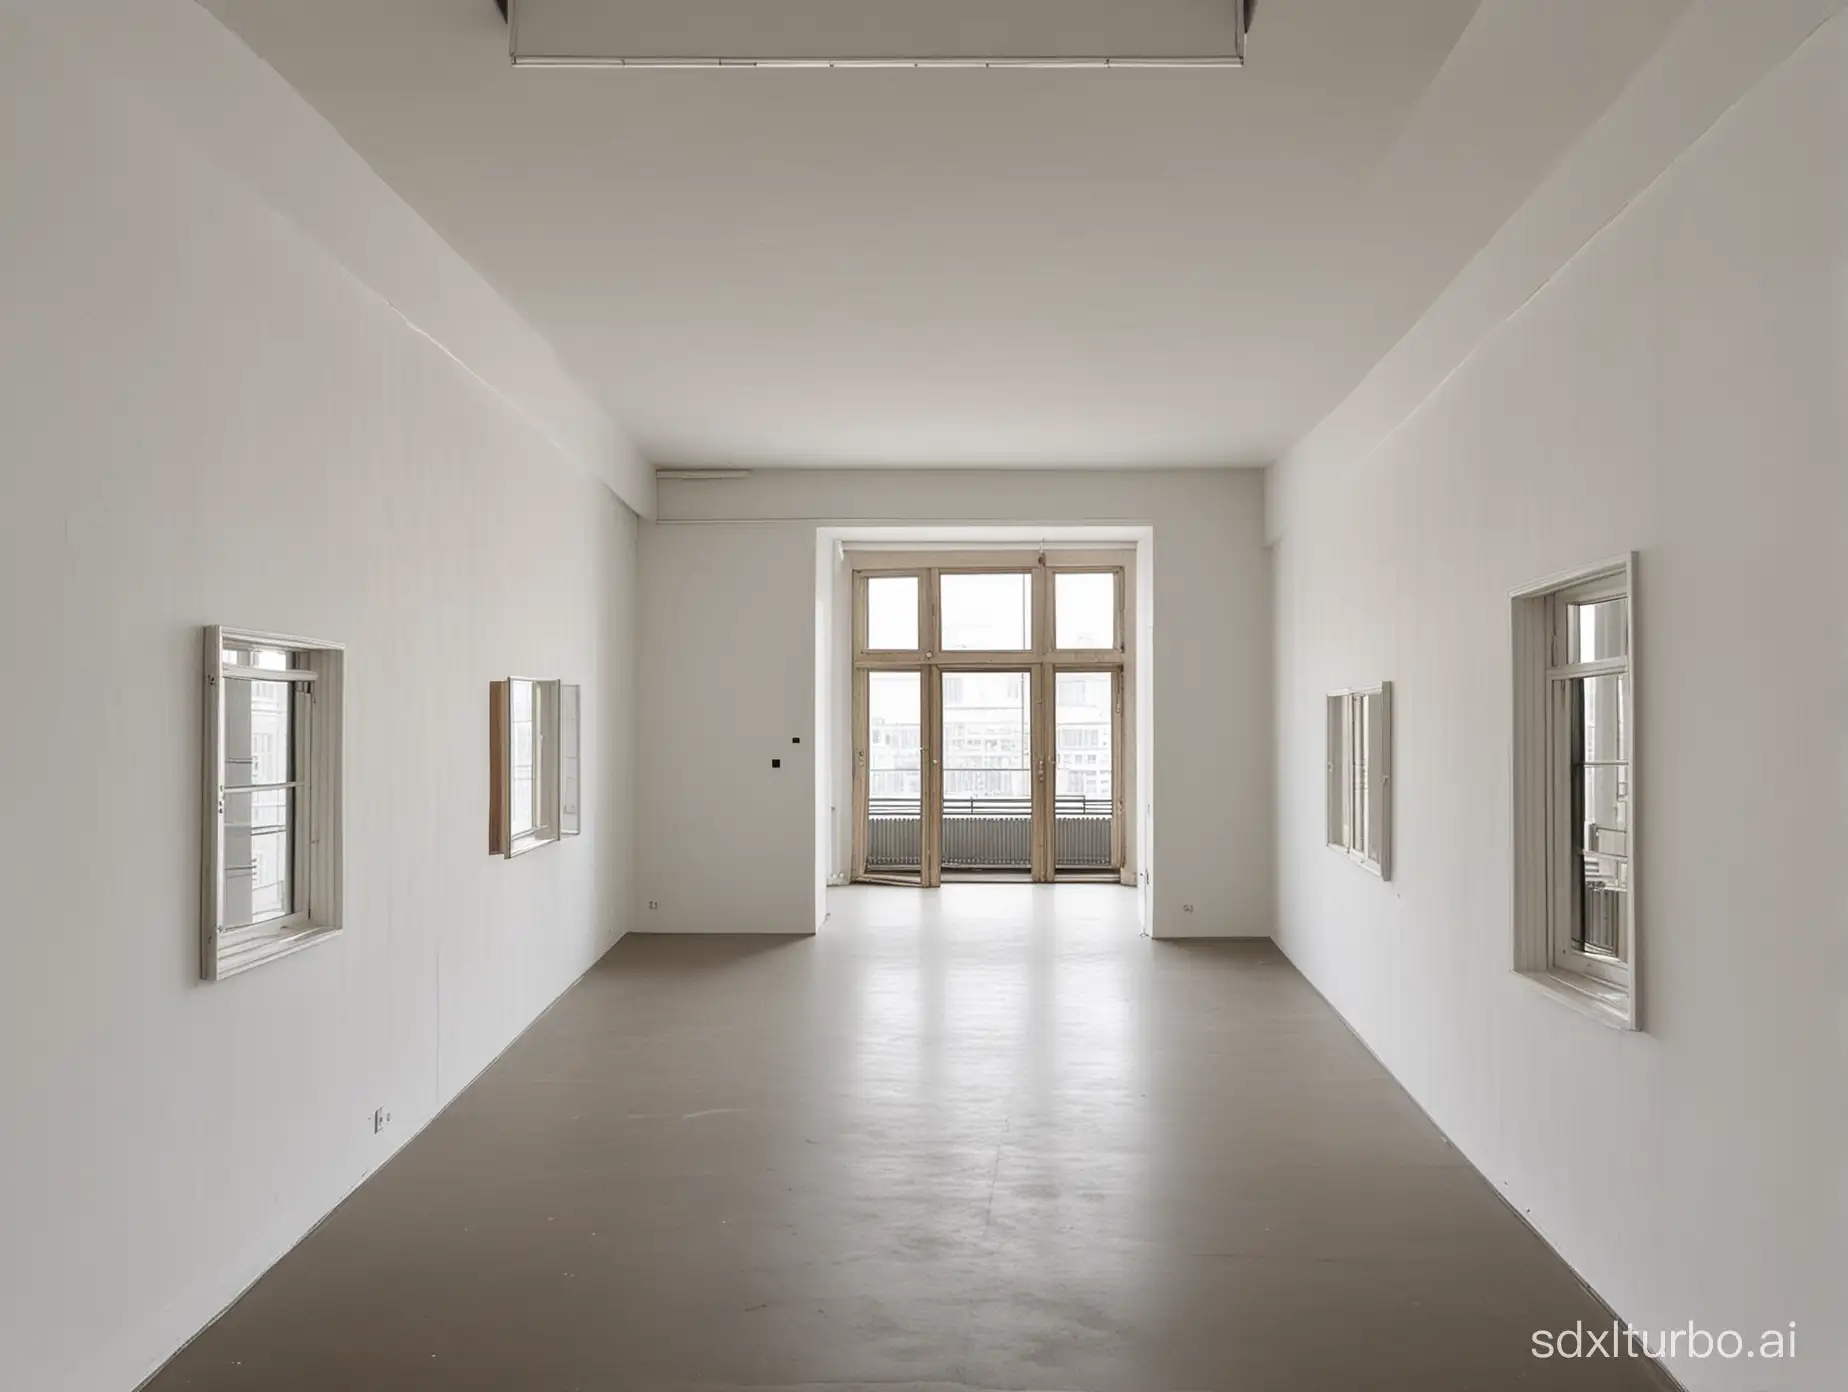 Birds-Eye-View-of-Berlin-Gallery-Room-with-Windows-and-Door